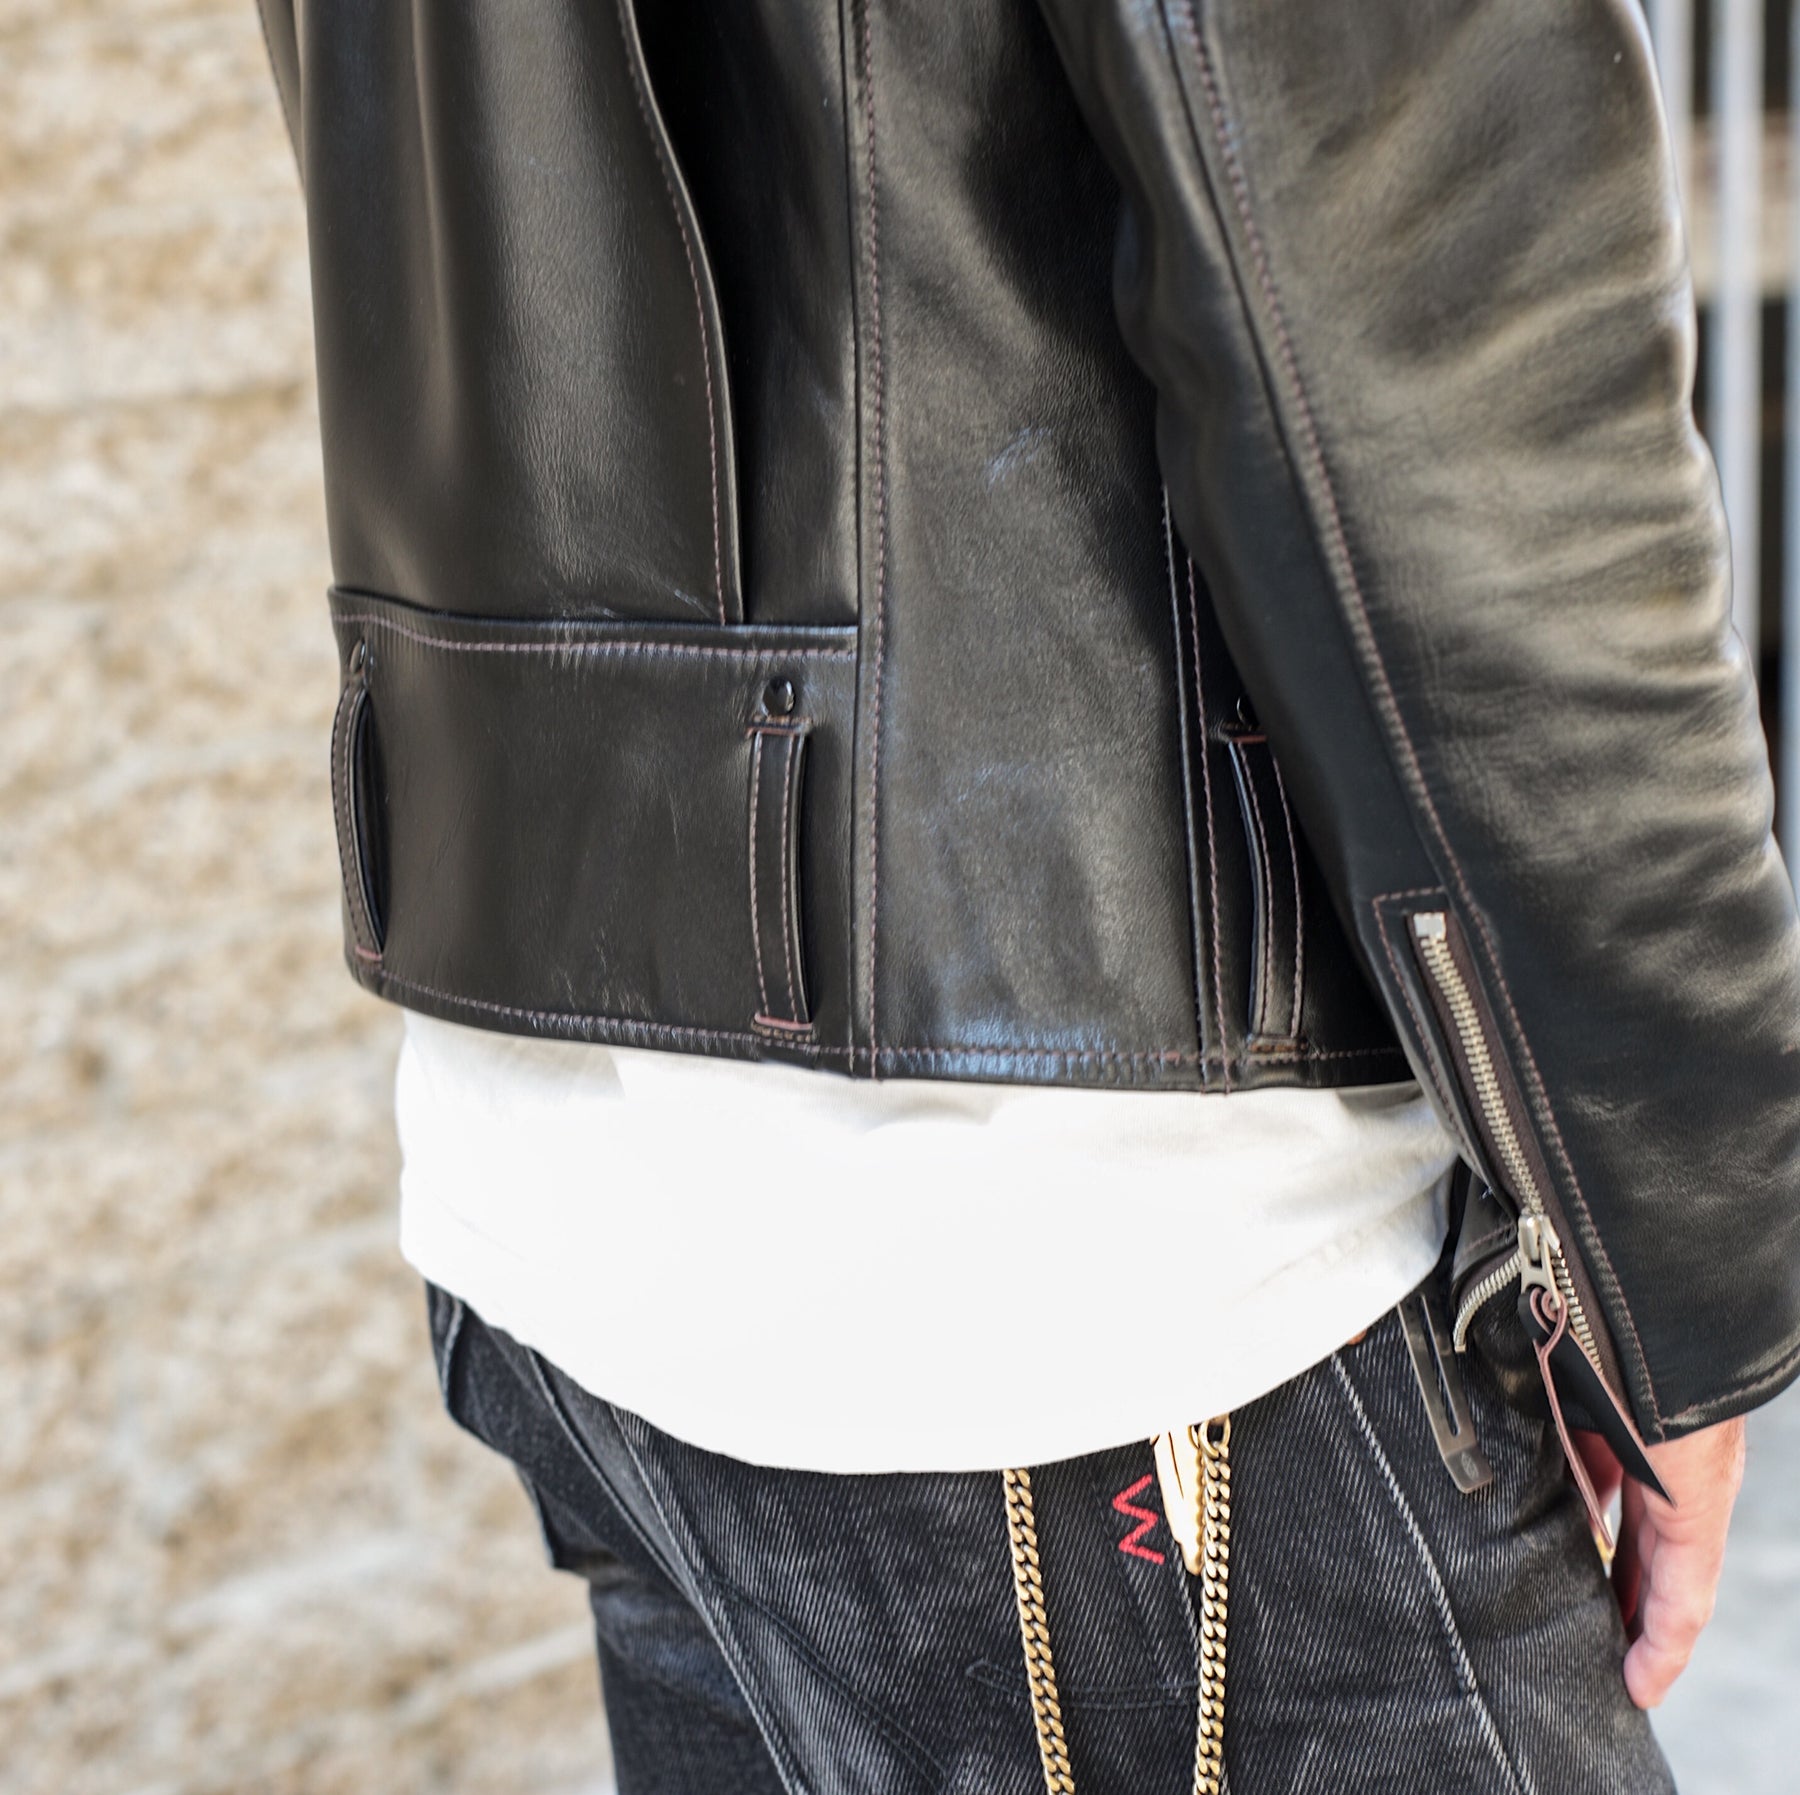 D-Pocket Jacket - Horsehide Leather